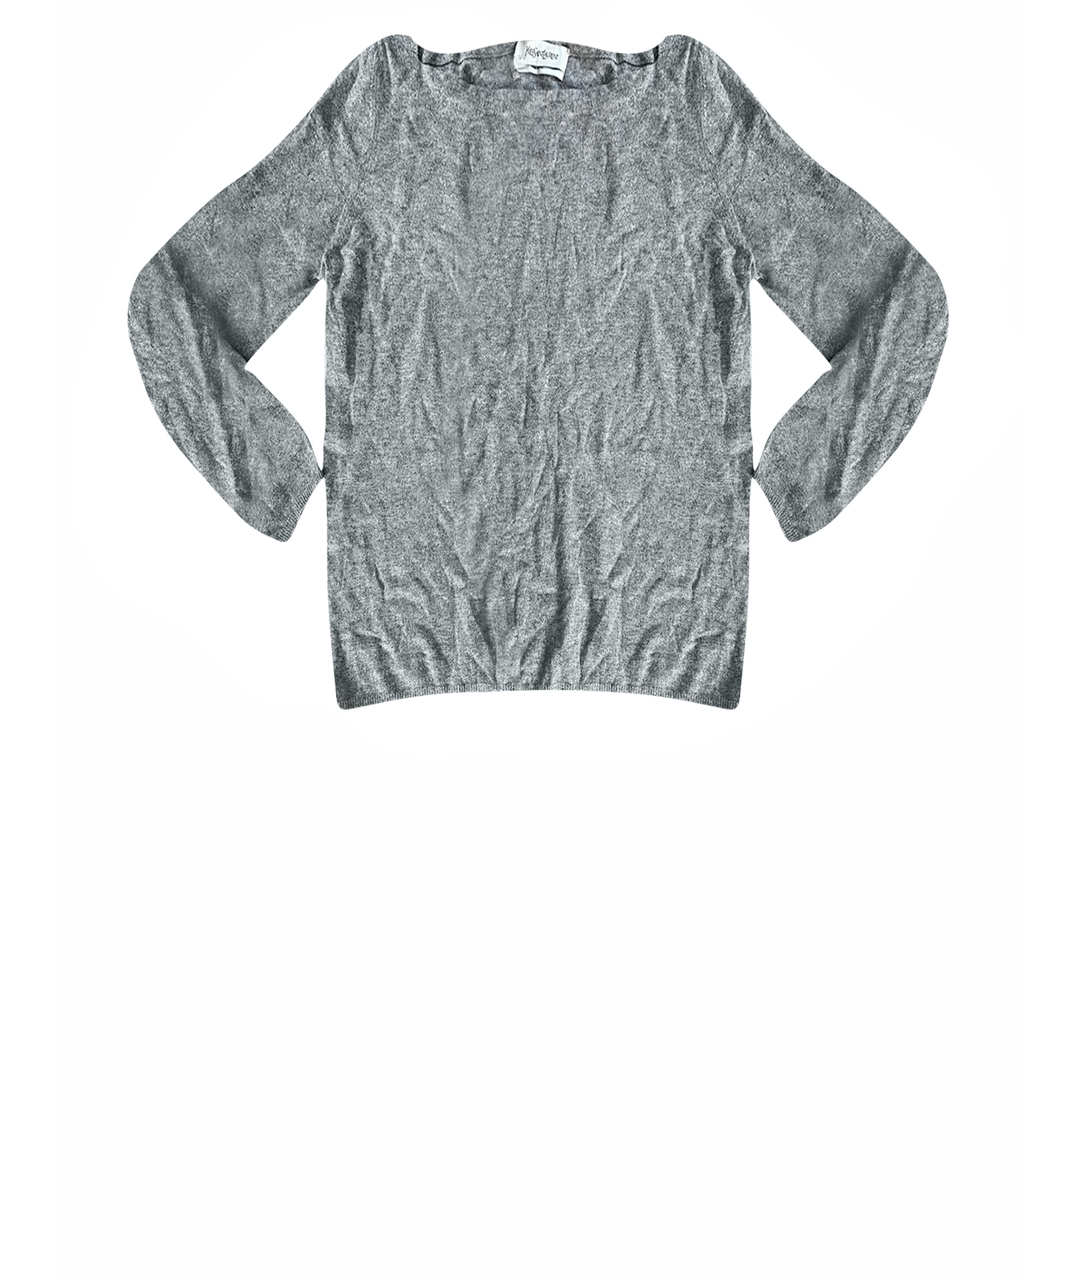 YVES SAINT LAURENT VINTAGE Серый кашемировый джемпер / свитер, фото 1